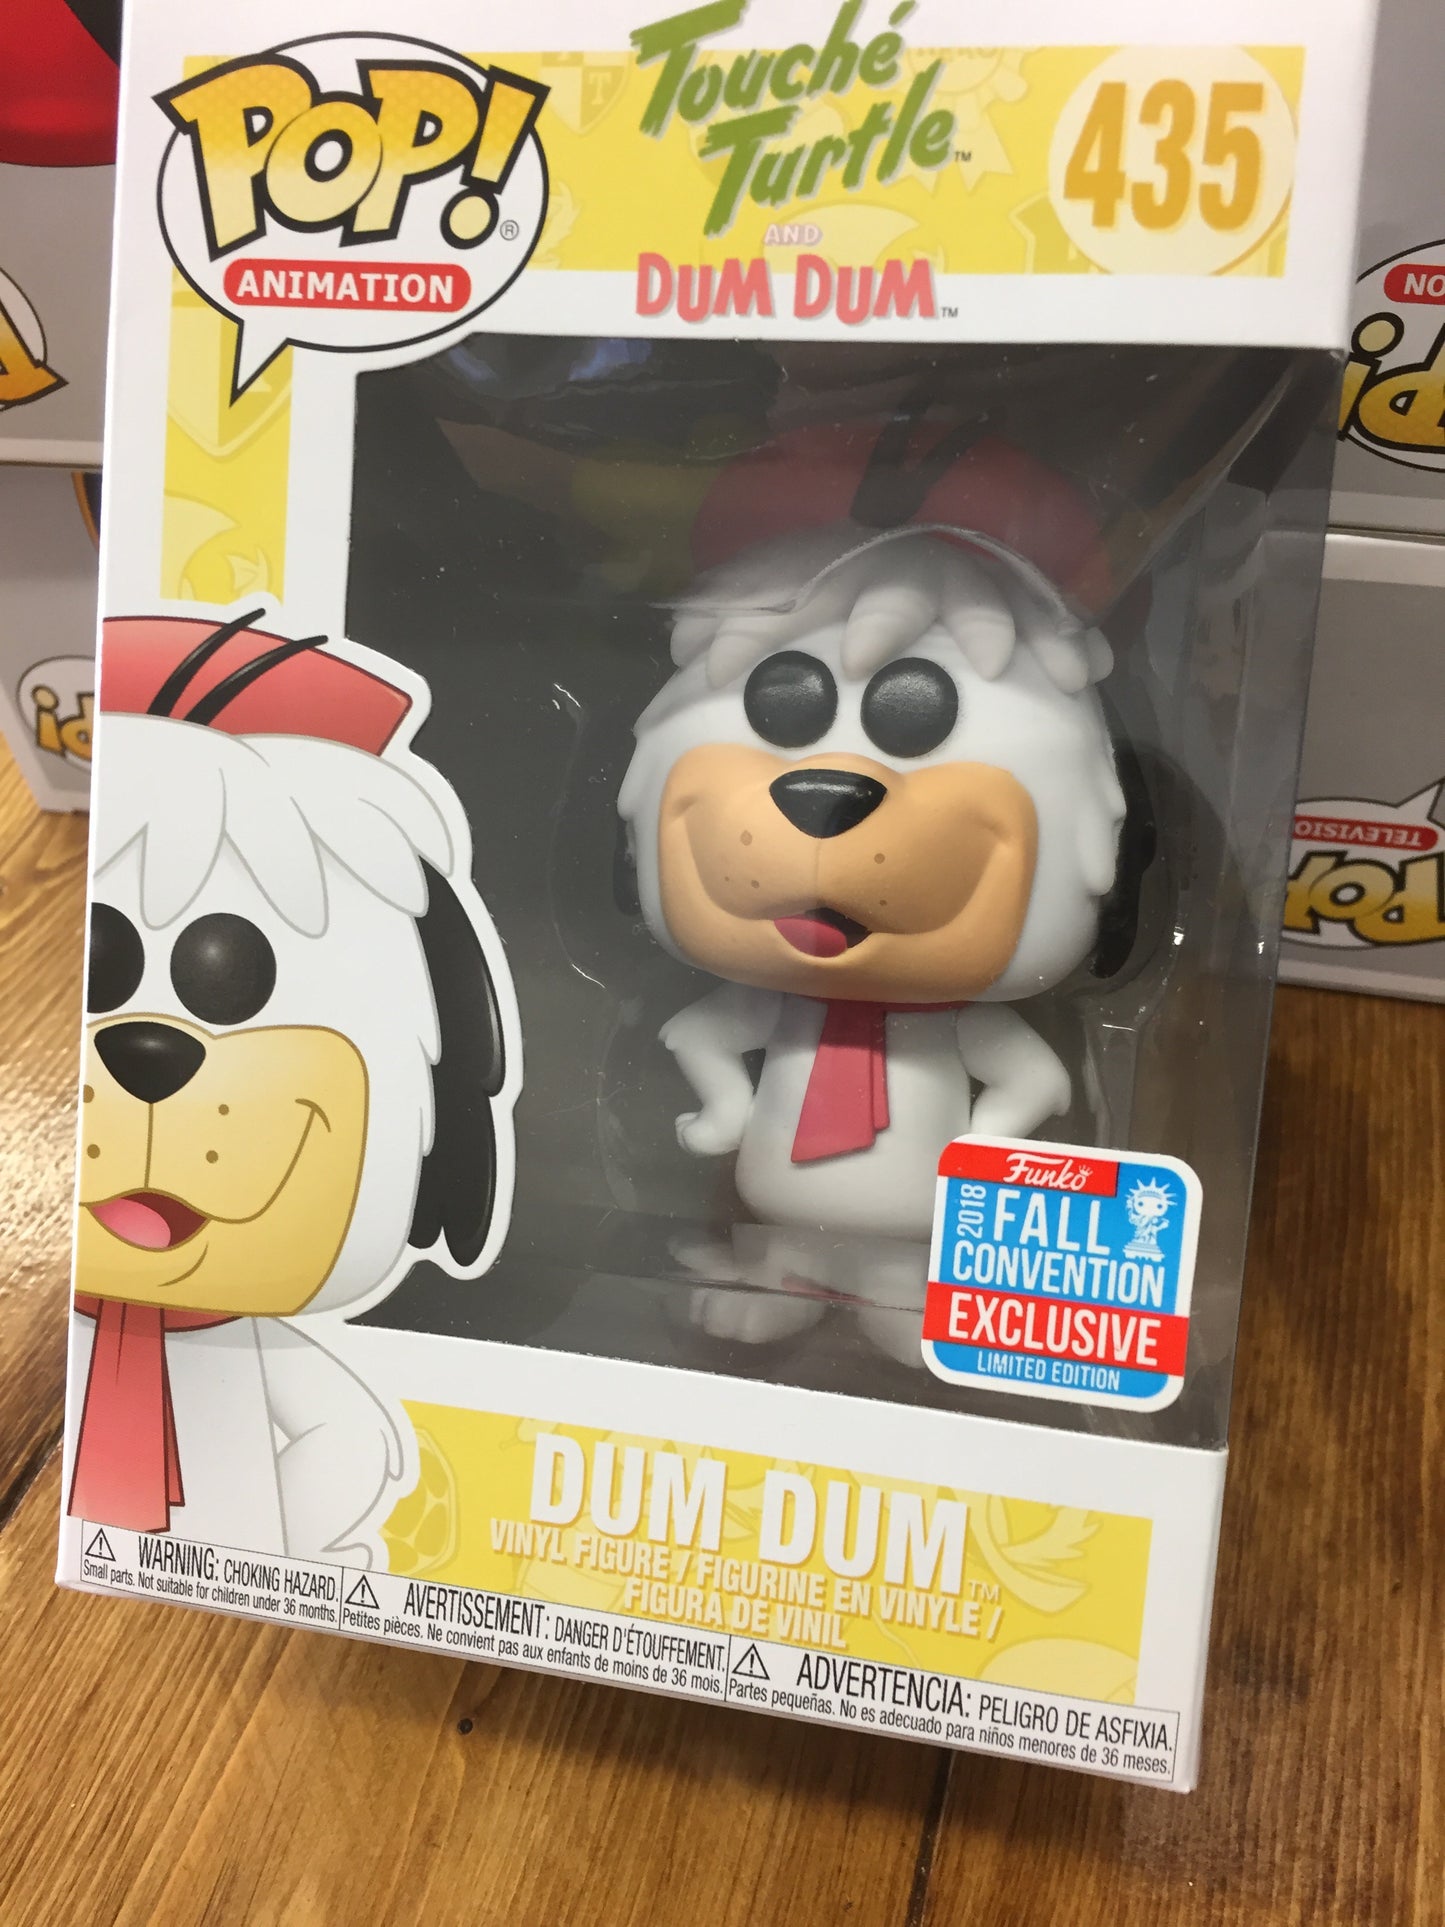 Touché turtle Dum Dum sdcc Exclusive Funko Pop vinyl Figure store